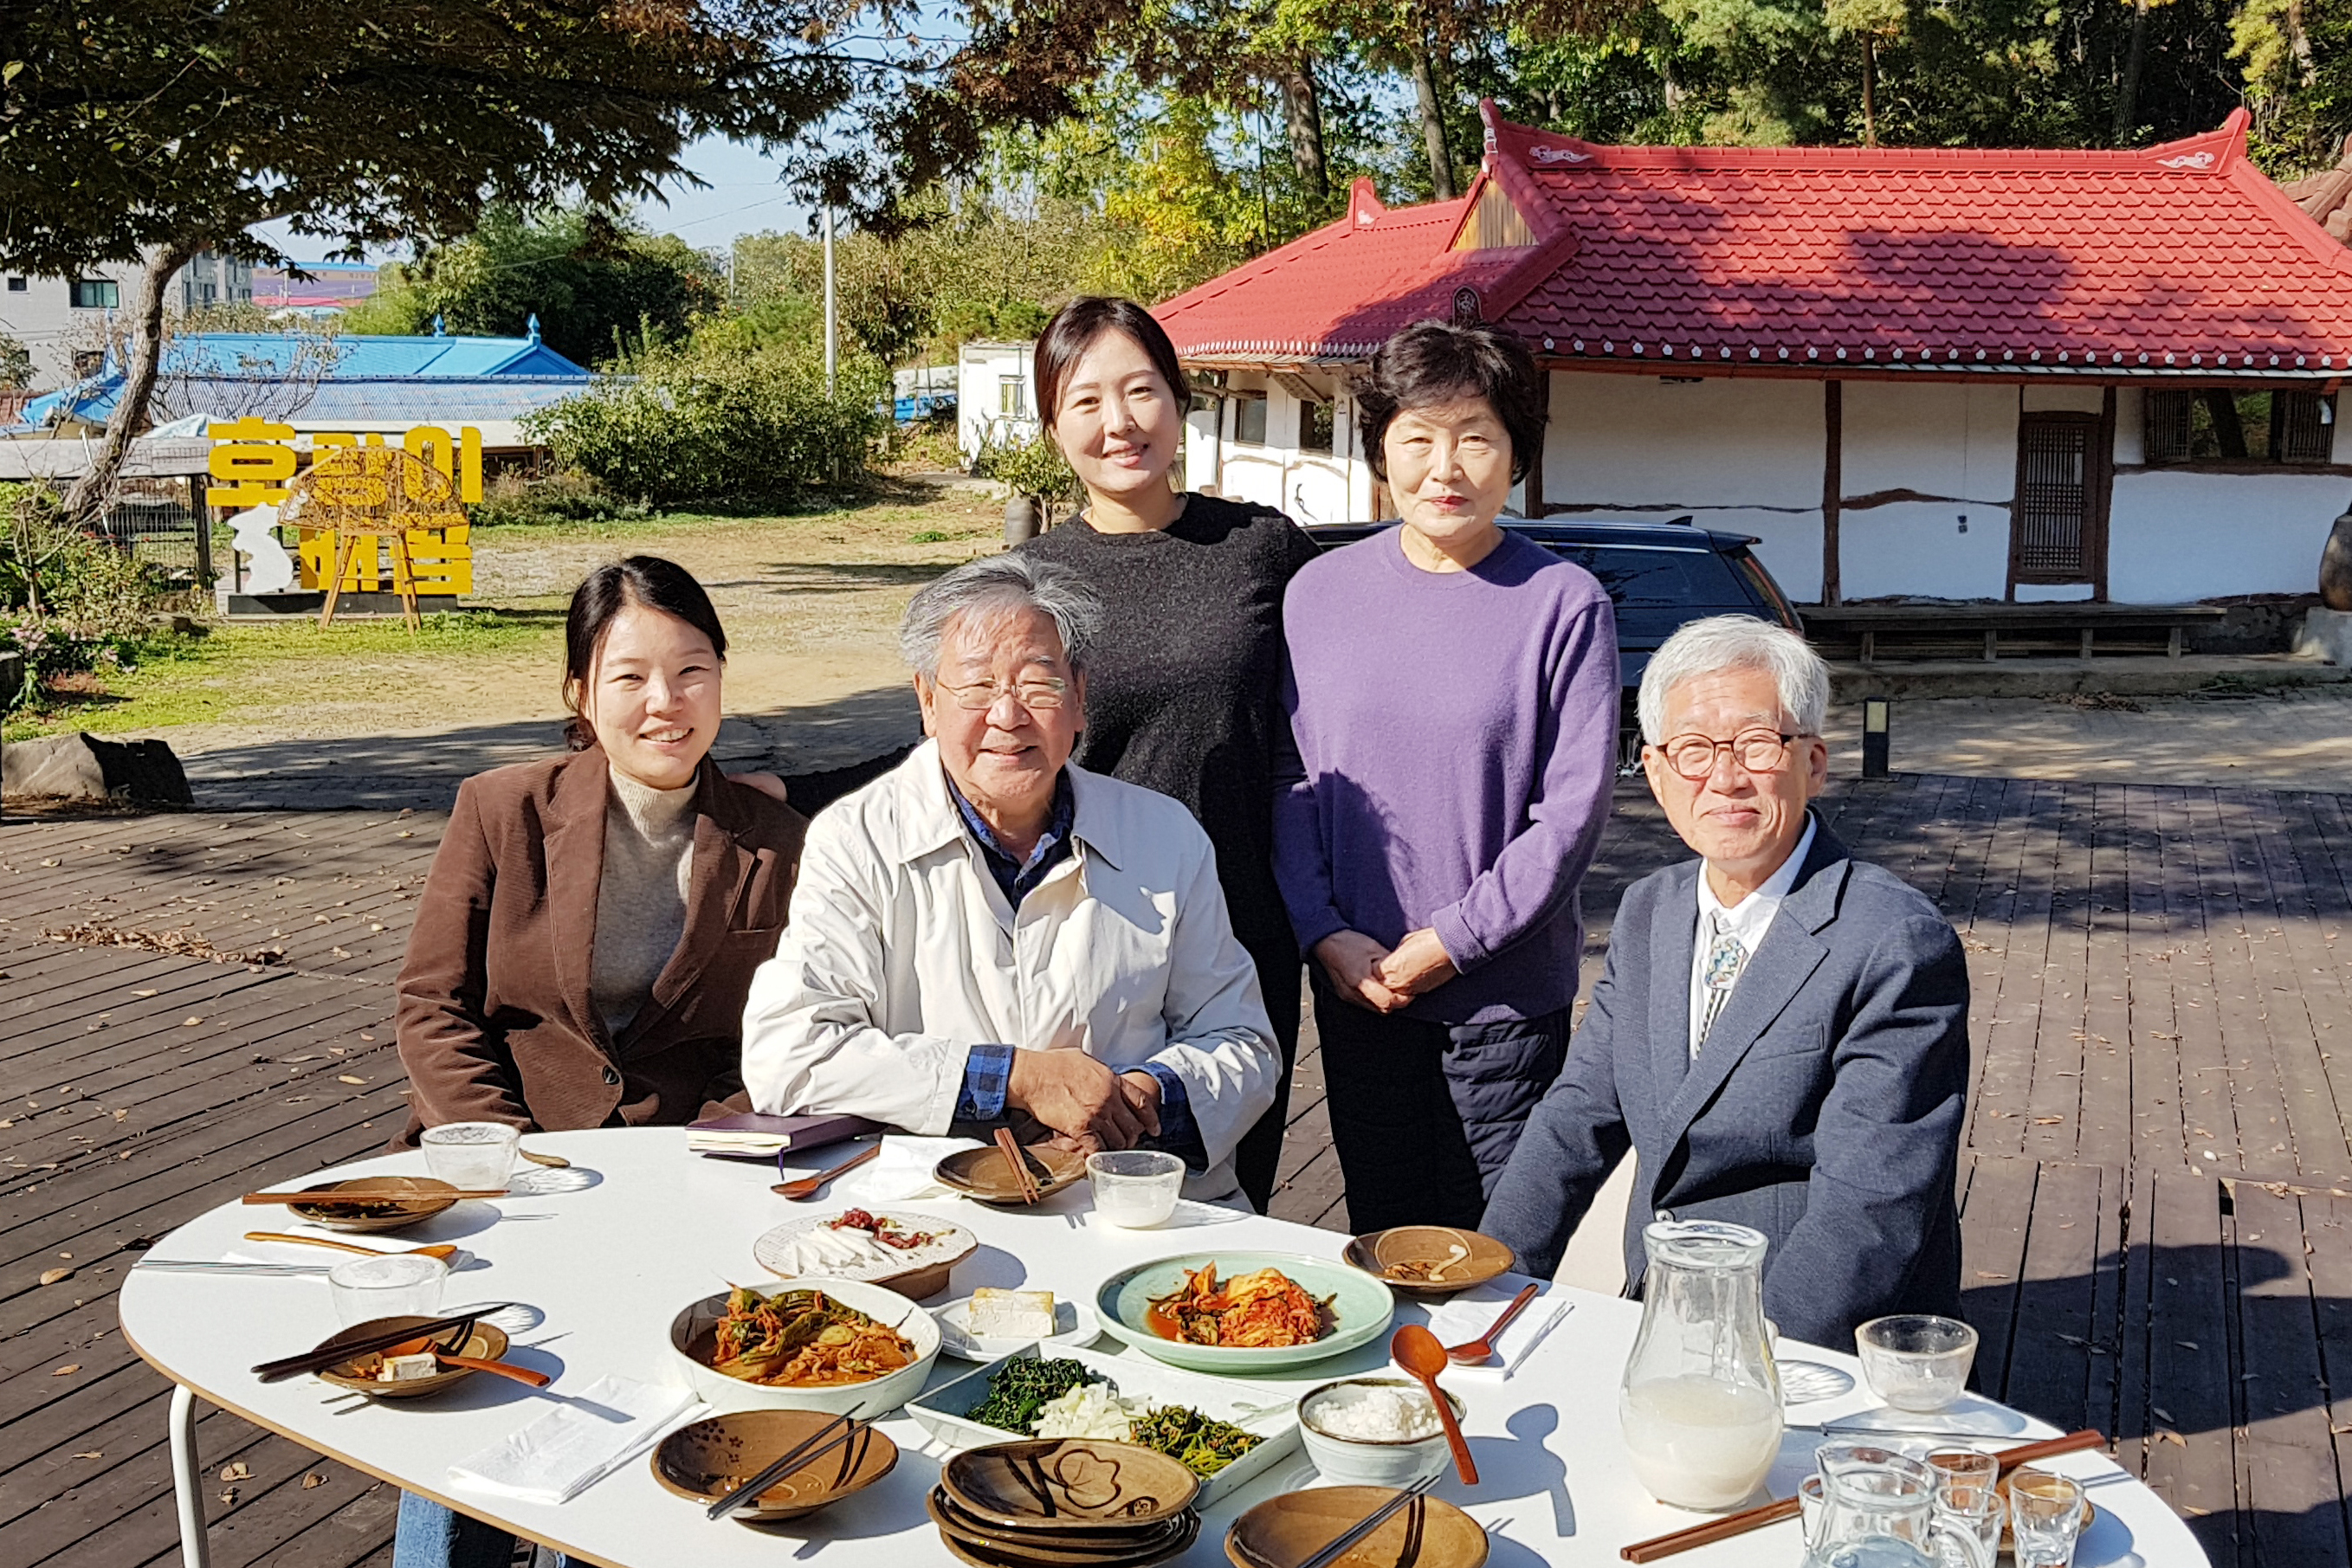 지난 11월 KBS  주안상 특집에 출연했던 이혜인 씨 가족. ⓒ밝은세상영농조합법인